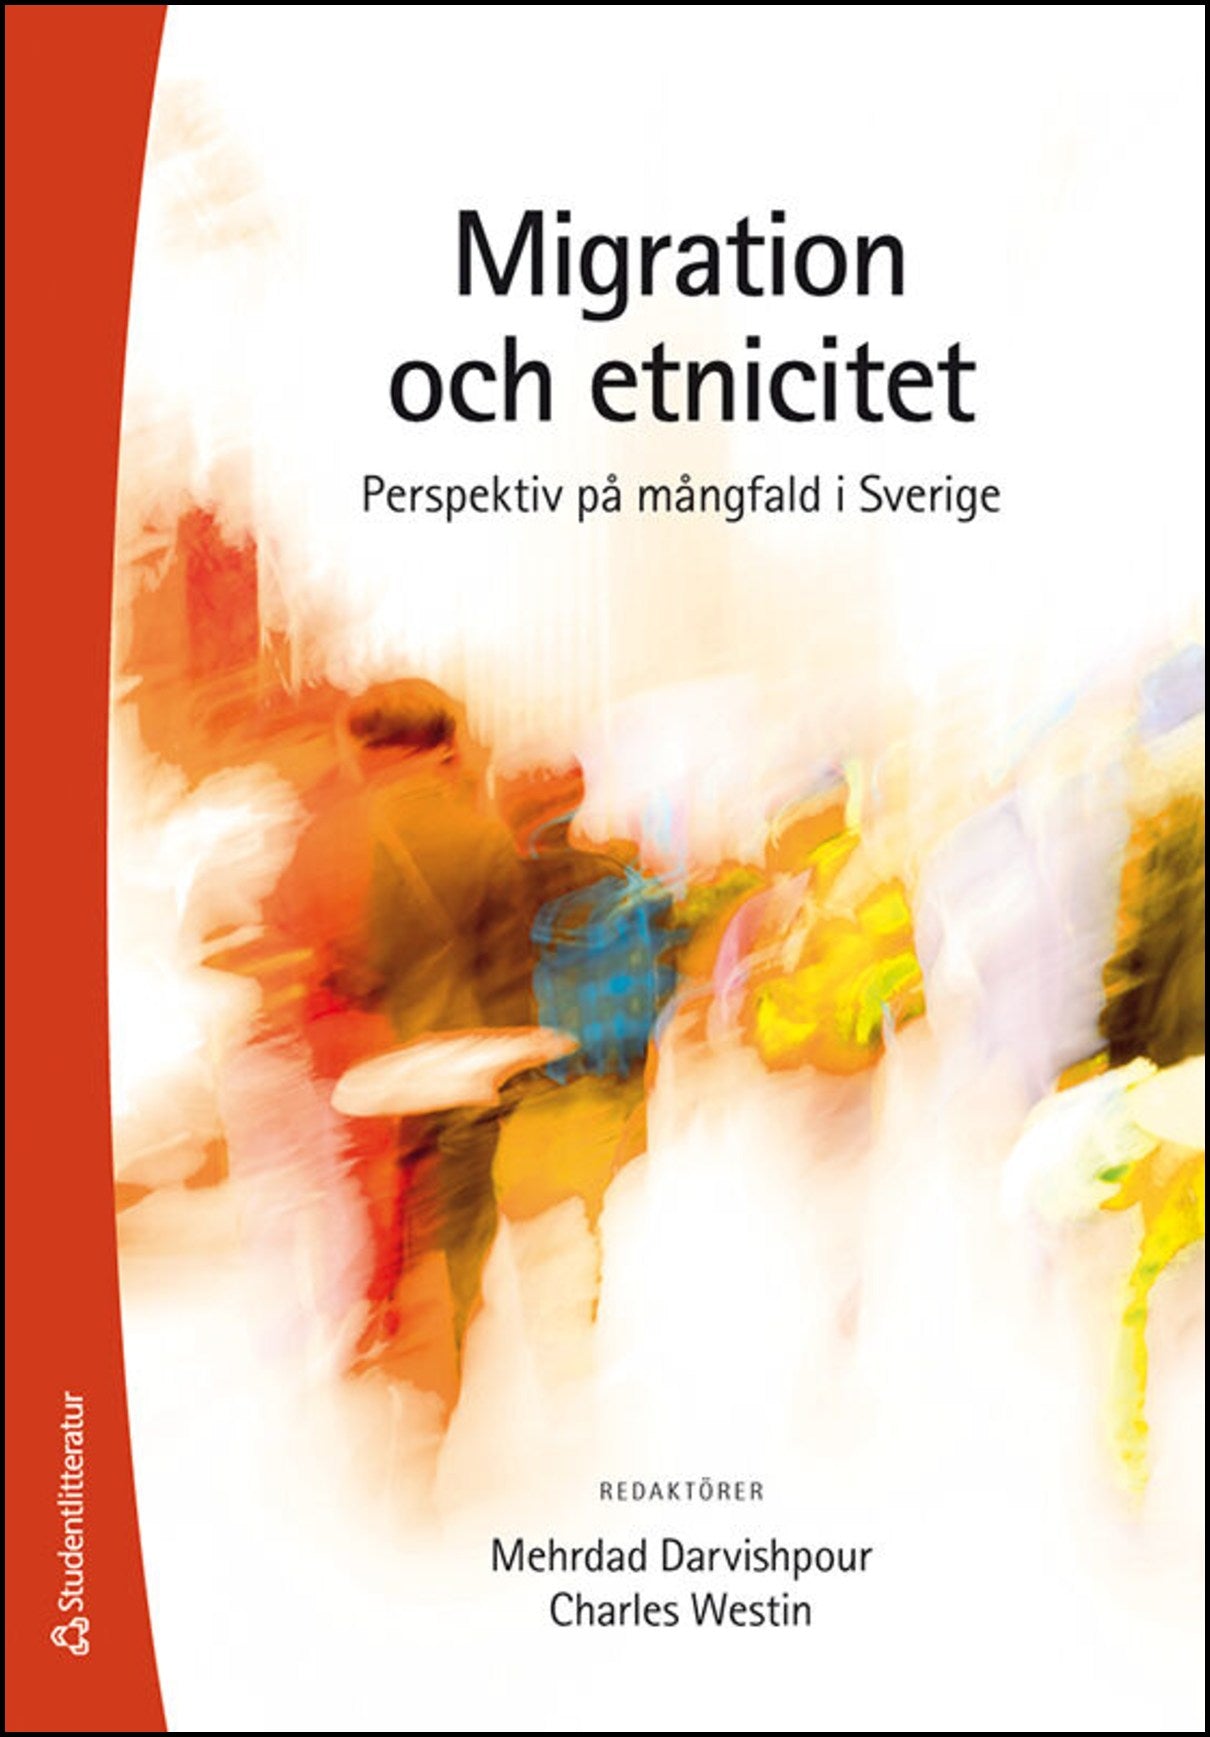 Darvishpour, Mehrdad | Westin, Charles | et al | Migration och etnicitet : Perspektiv på mångfald i Sverige